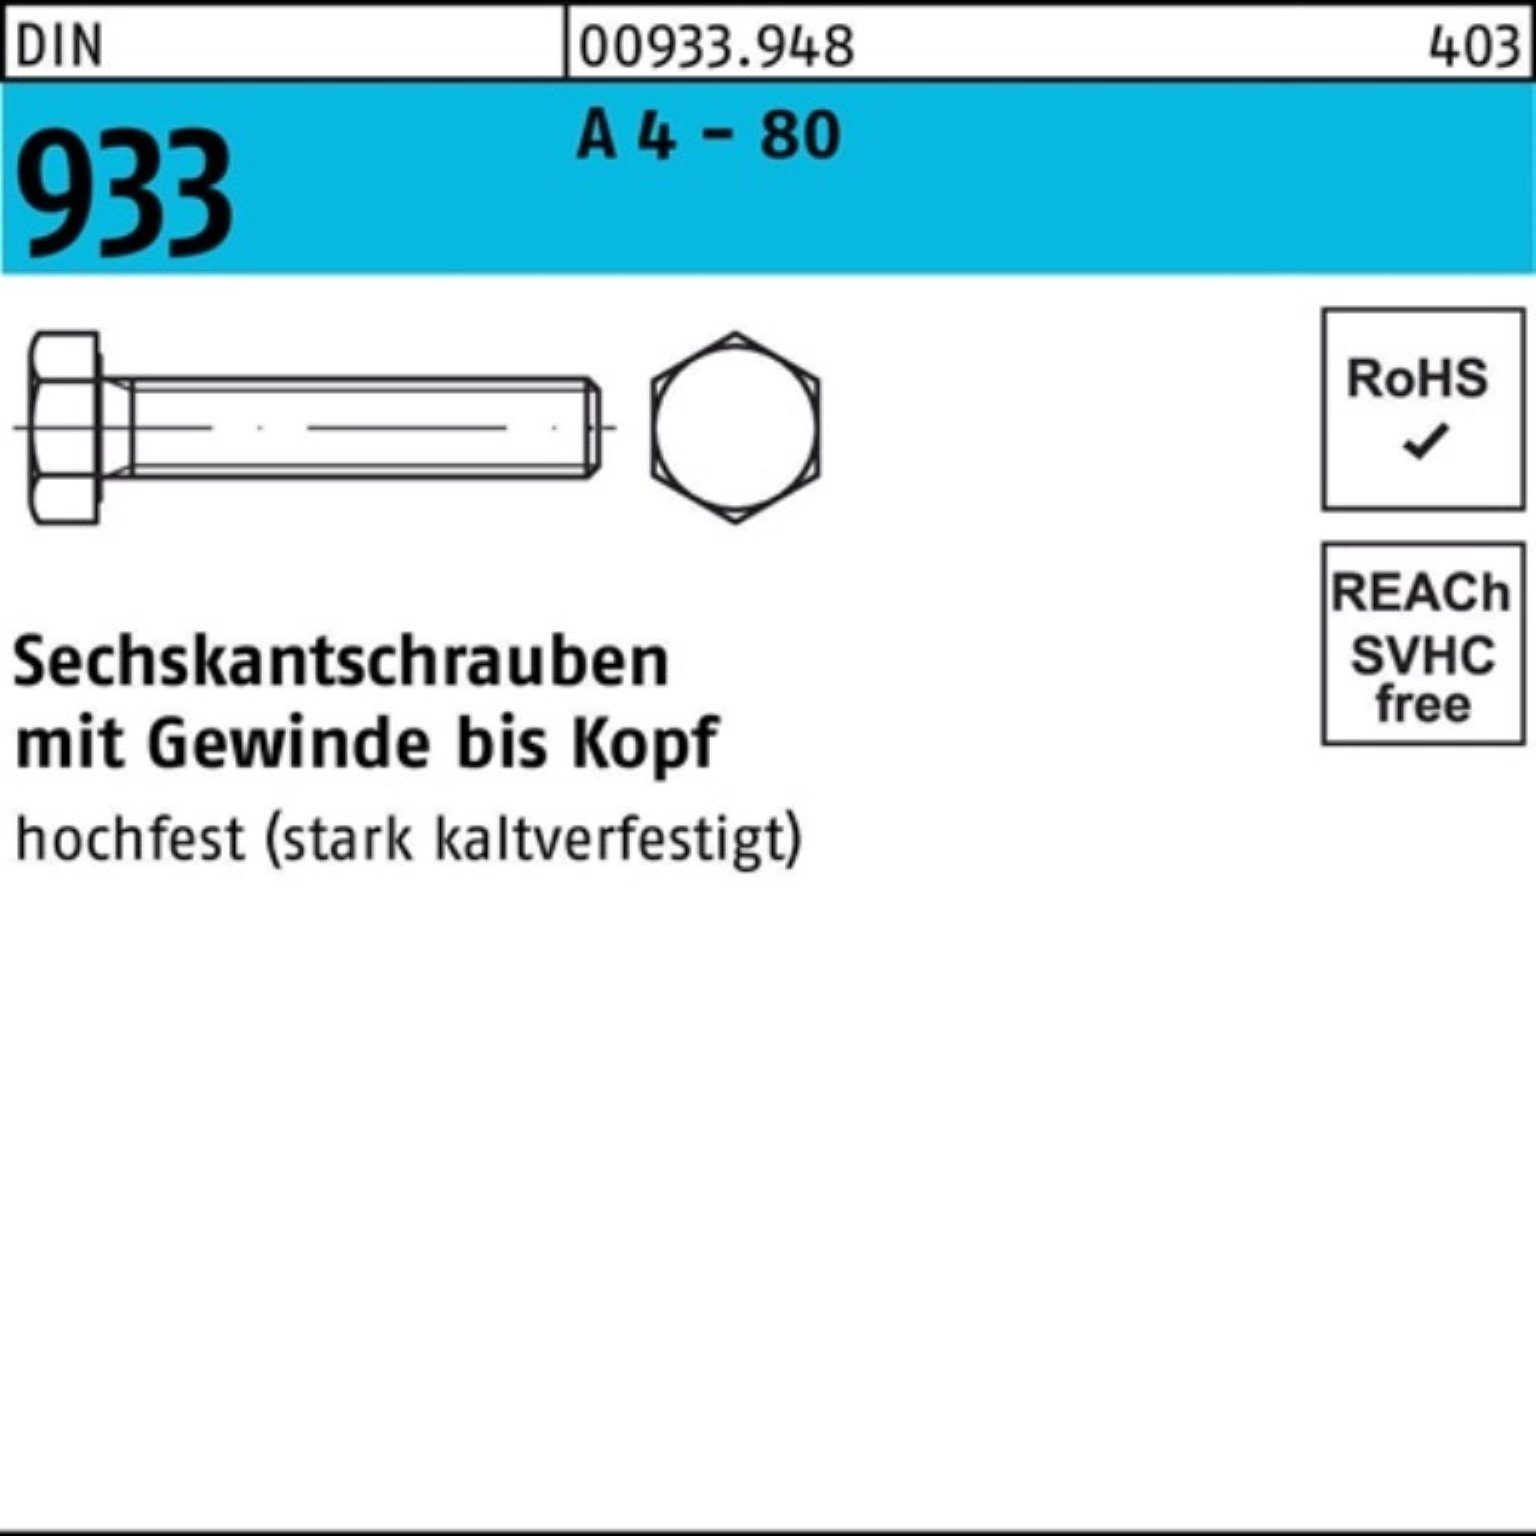 Reyher Sechskantschraube 100er Pack Sechskantschraube DIN 933 VG M10x 70 A 4 - 80 100 Stück DI